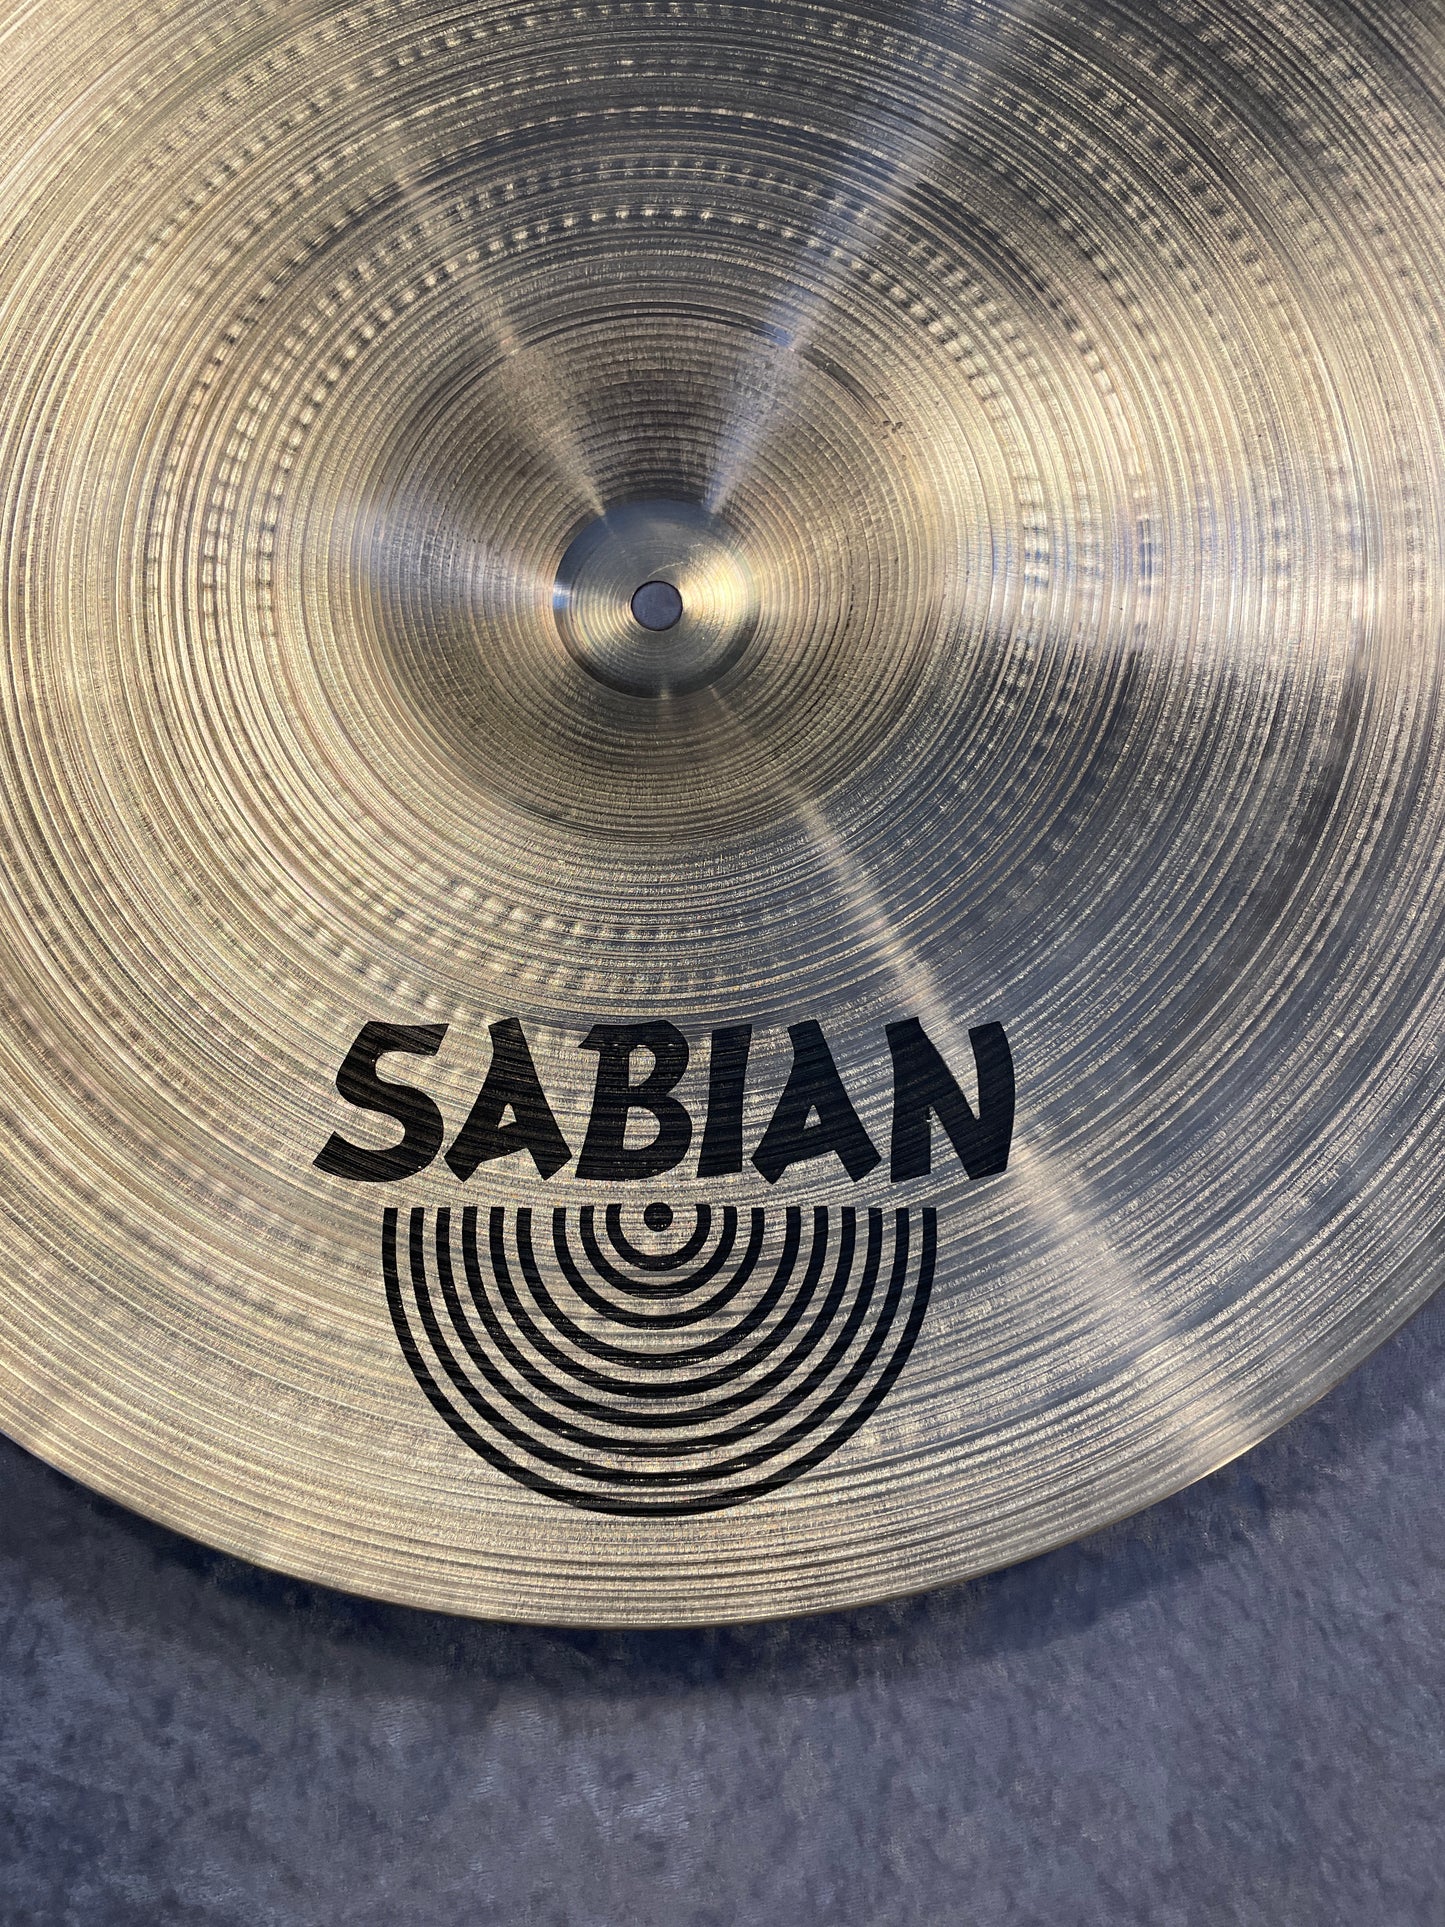 18" Sabian Prototype Crash Cymbal 1236g